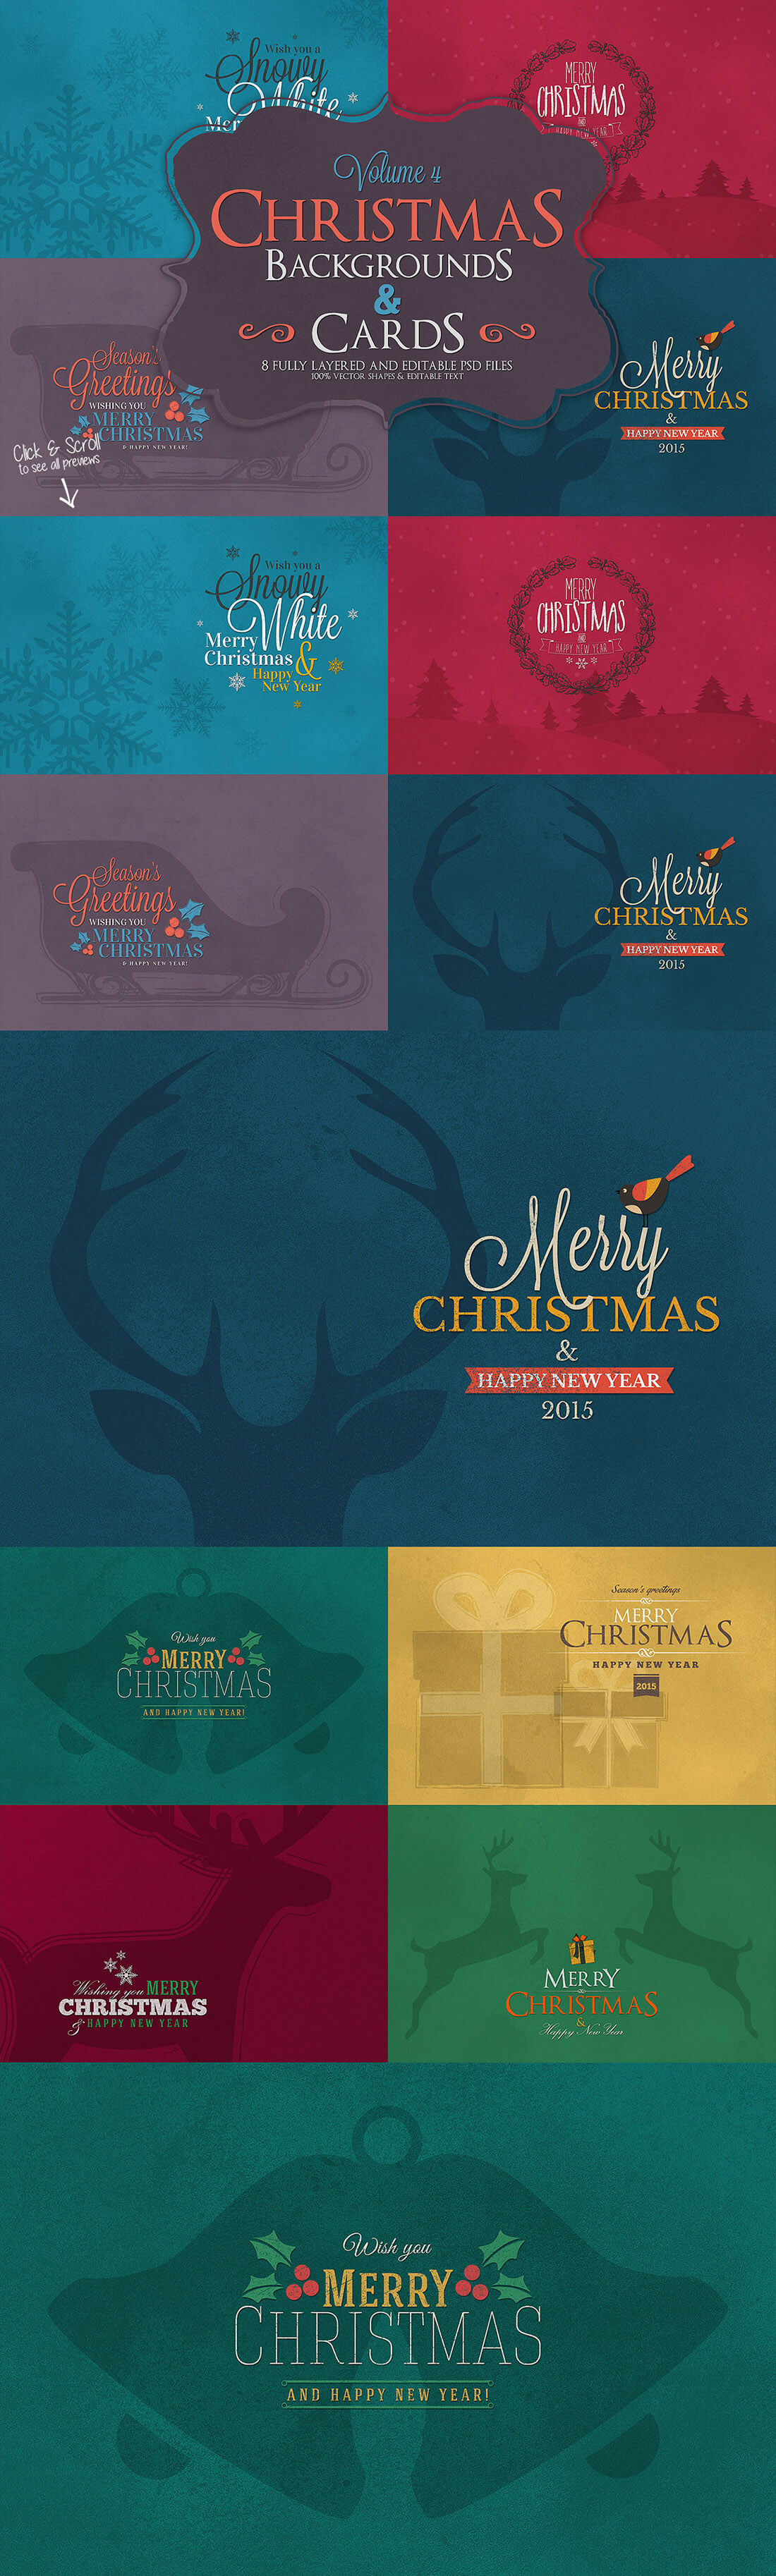 圣诞特典：400+圣诞主题设计素材包 Christmas Bundle 2016（2.35GB, AI, EPS, PSD 格式）插图(7)